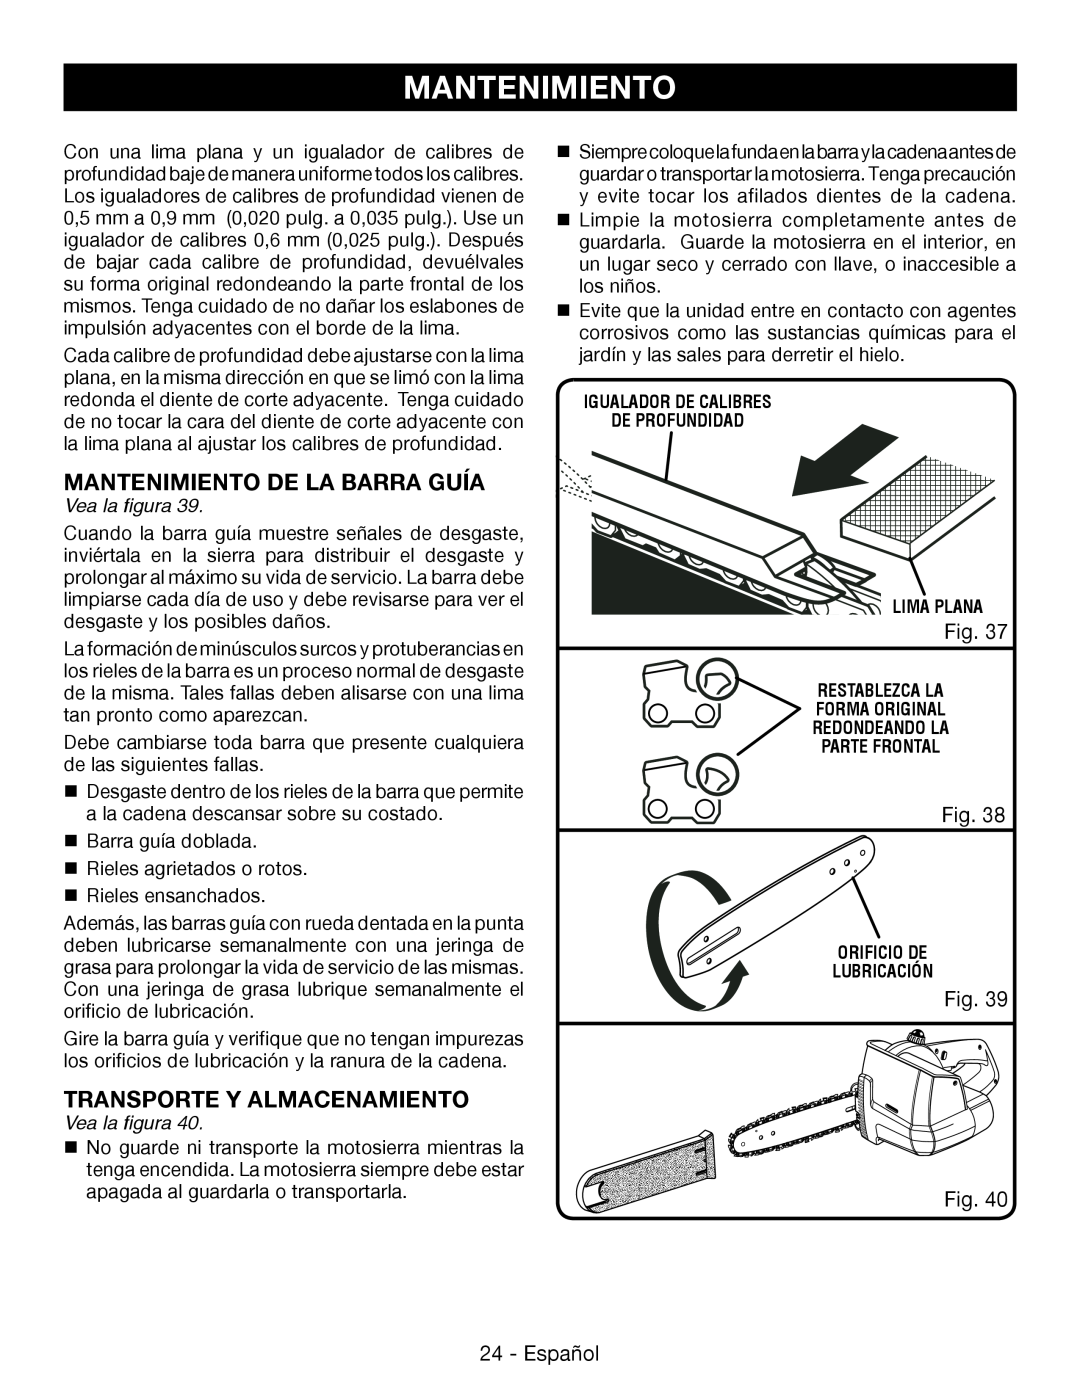 Ryobi P545 manuel dutilisation Mantenimiento De La Barra Guía, Transporte Y Almacenamiento, Vea la figura 